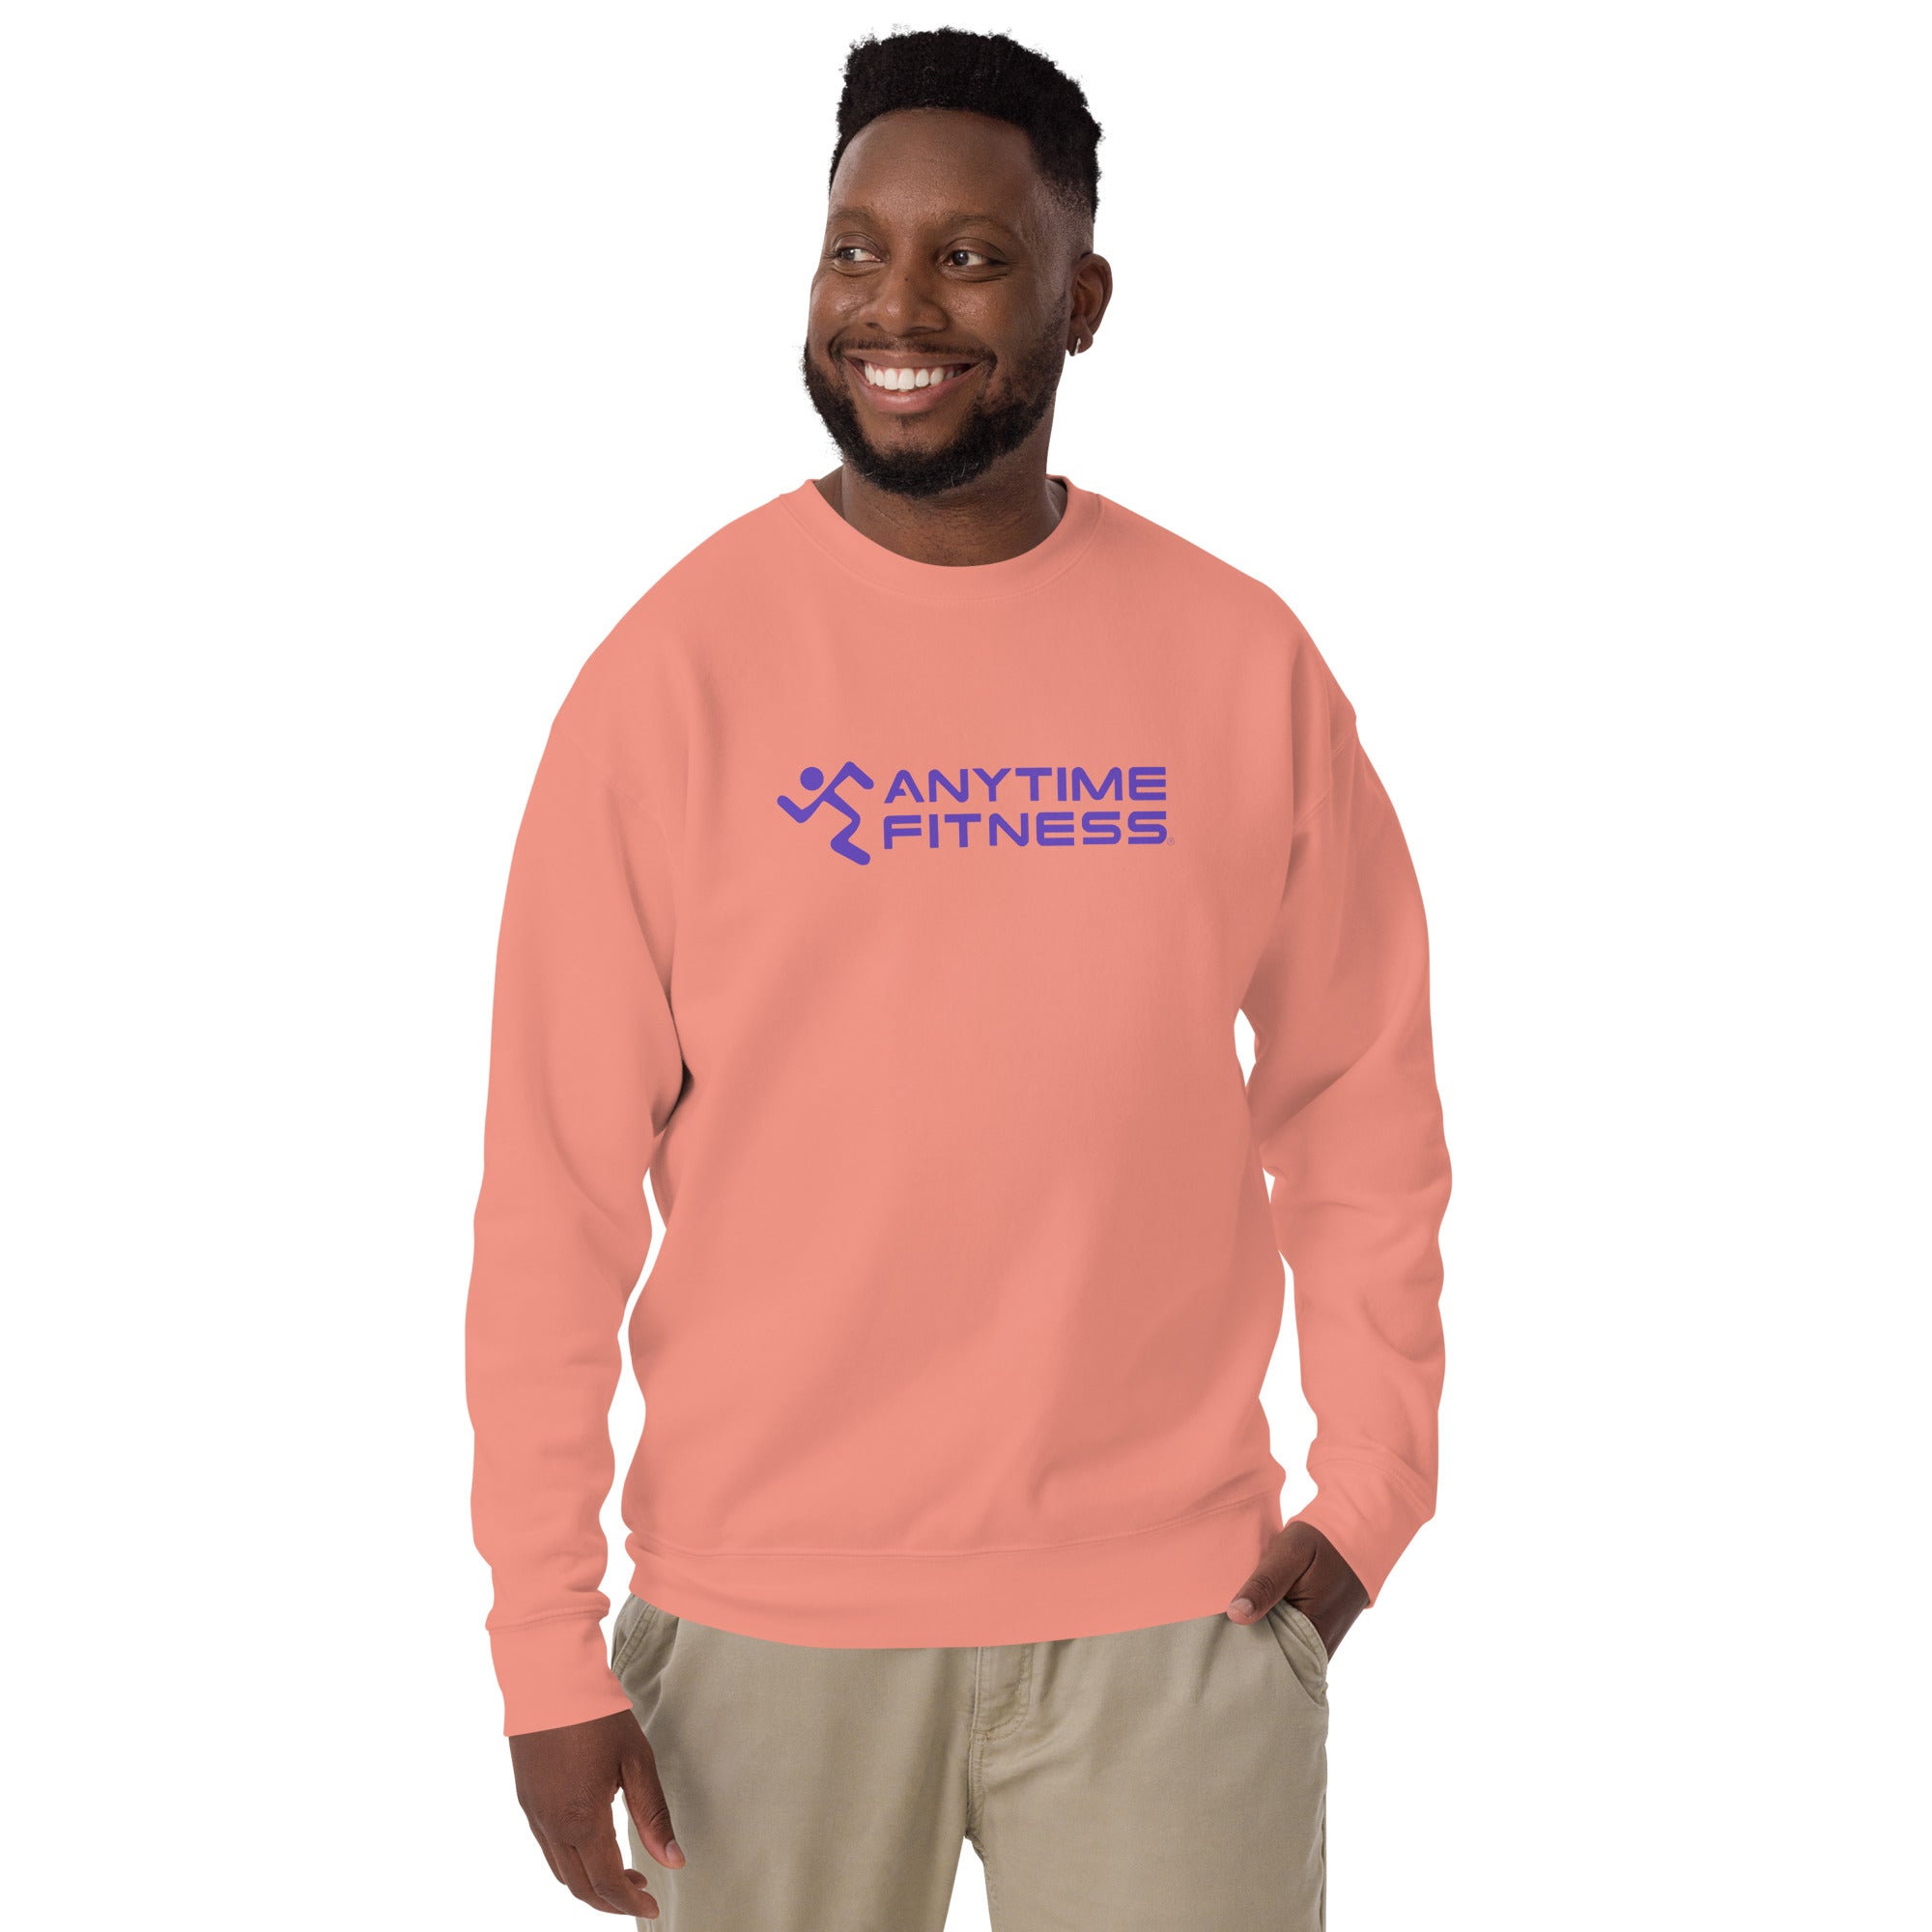 Runnong Man & Anytime (Purple) Fitness Premium Sweatshirt